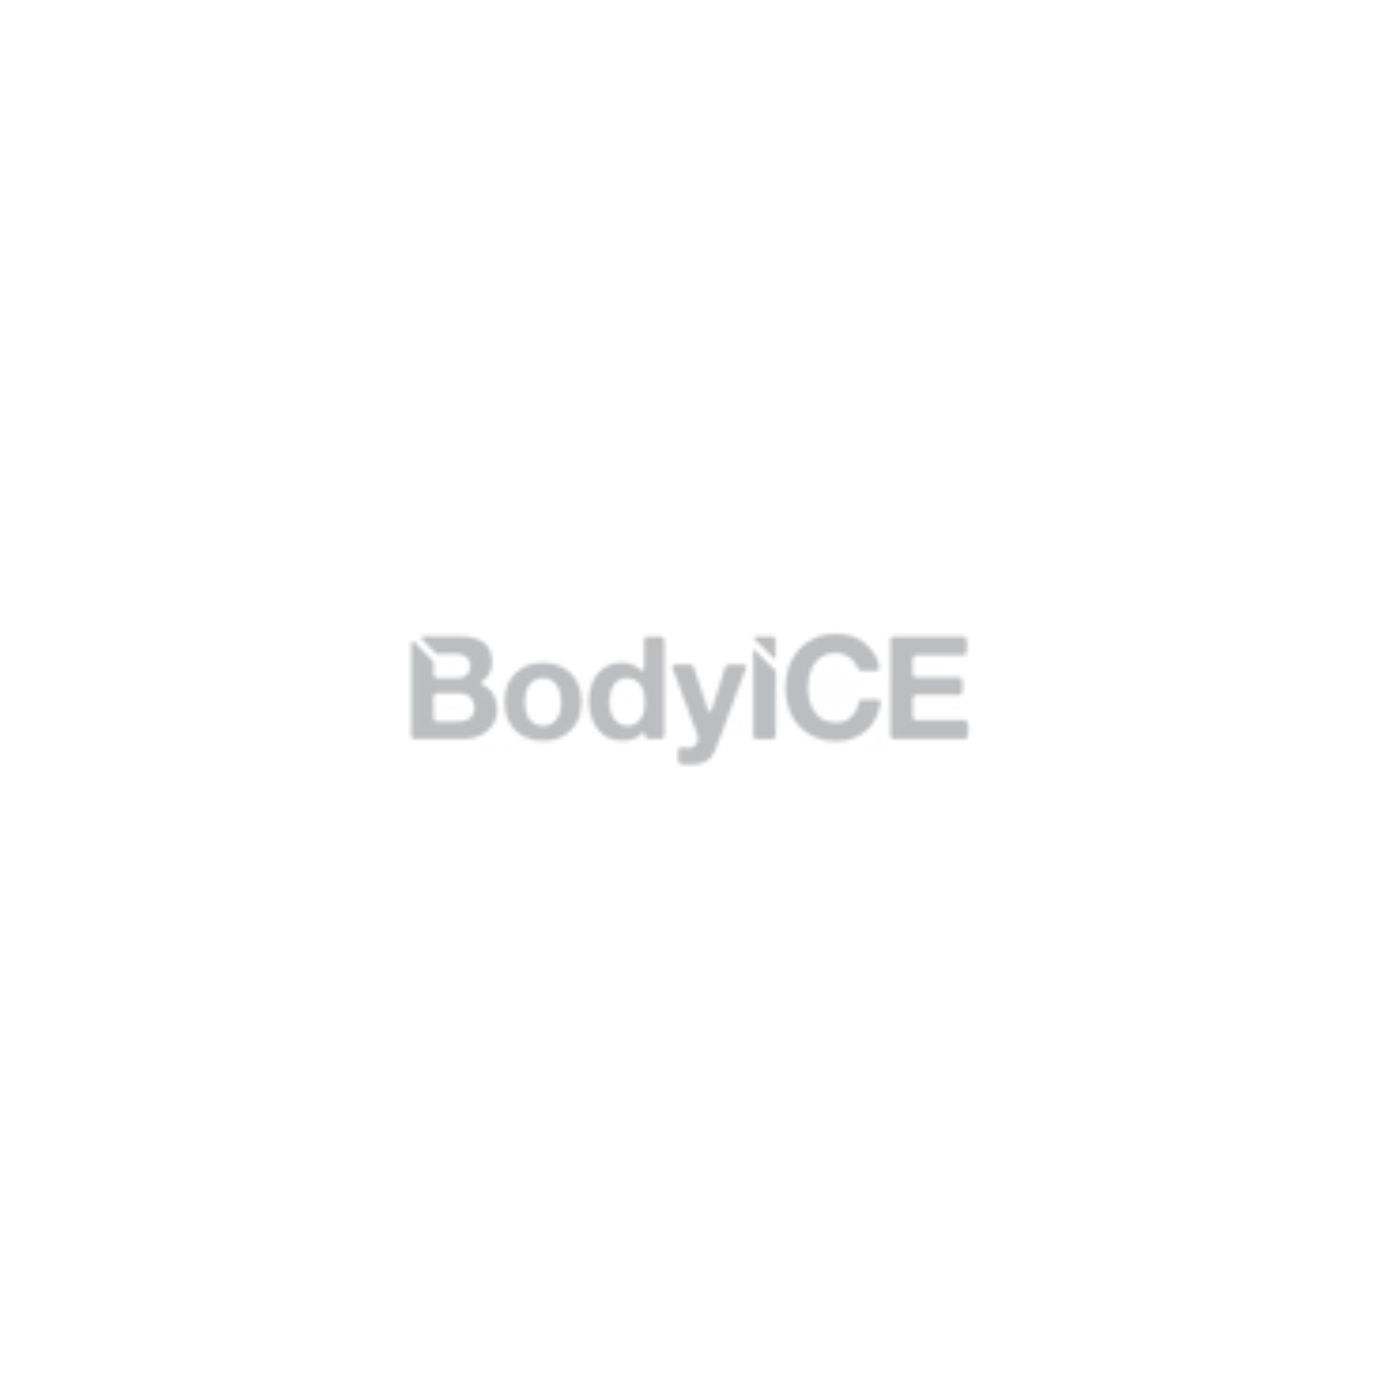 Body Ice